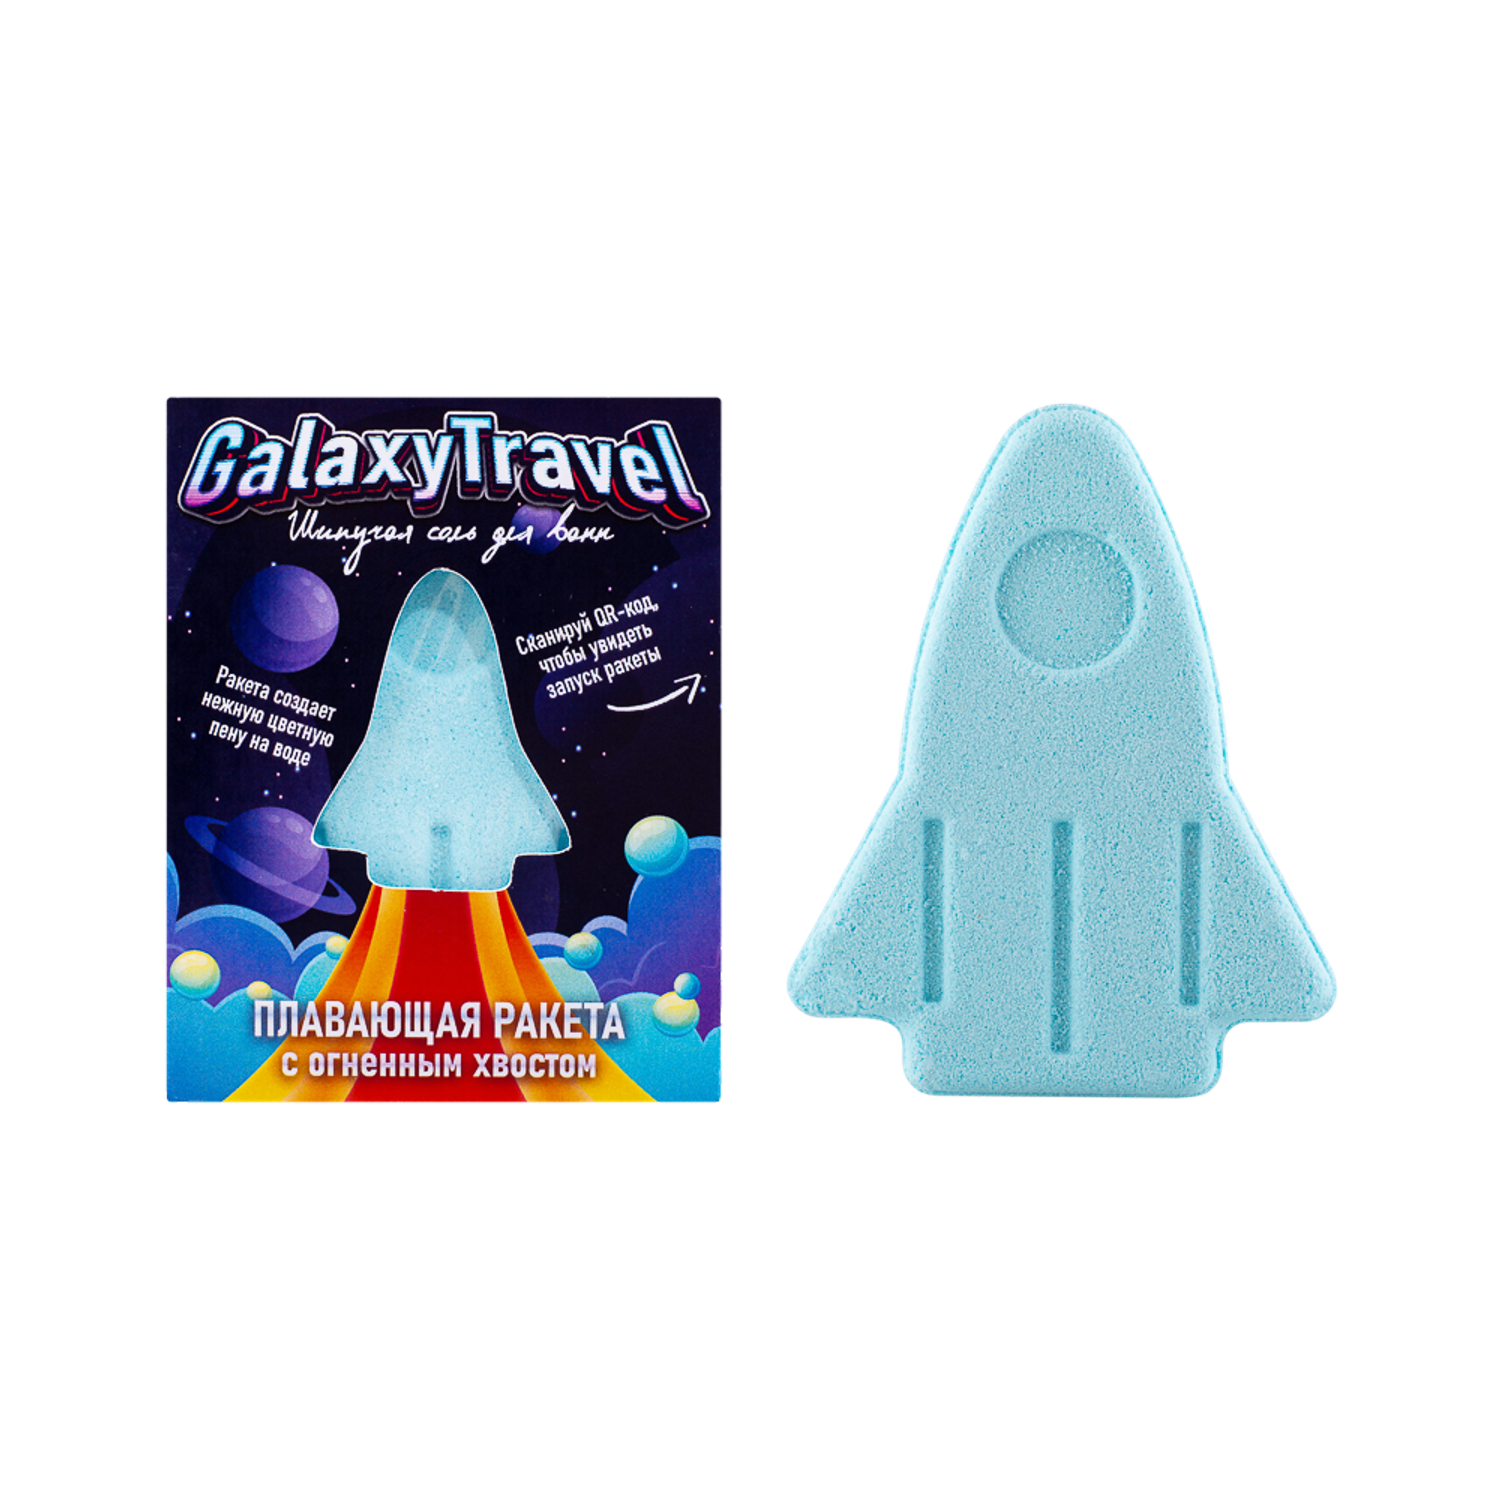 Бомбочка для ванны Laboratory KATRIN с пеной и цветными вставками Плавающая ракета Galaxy Travel 130гр - фото 3